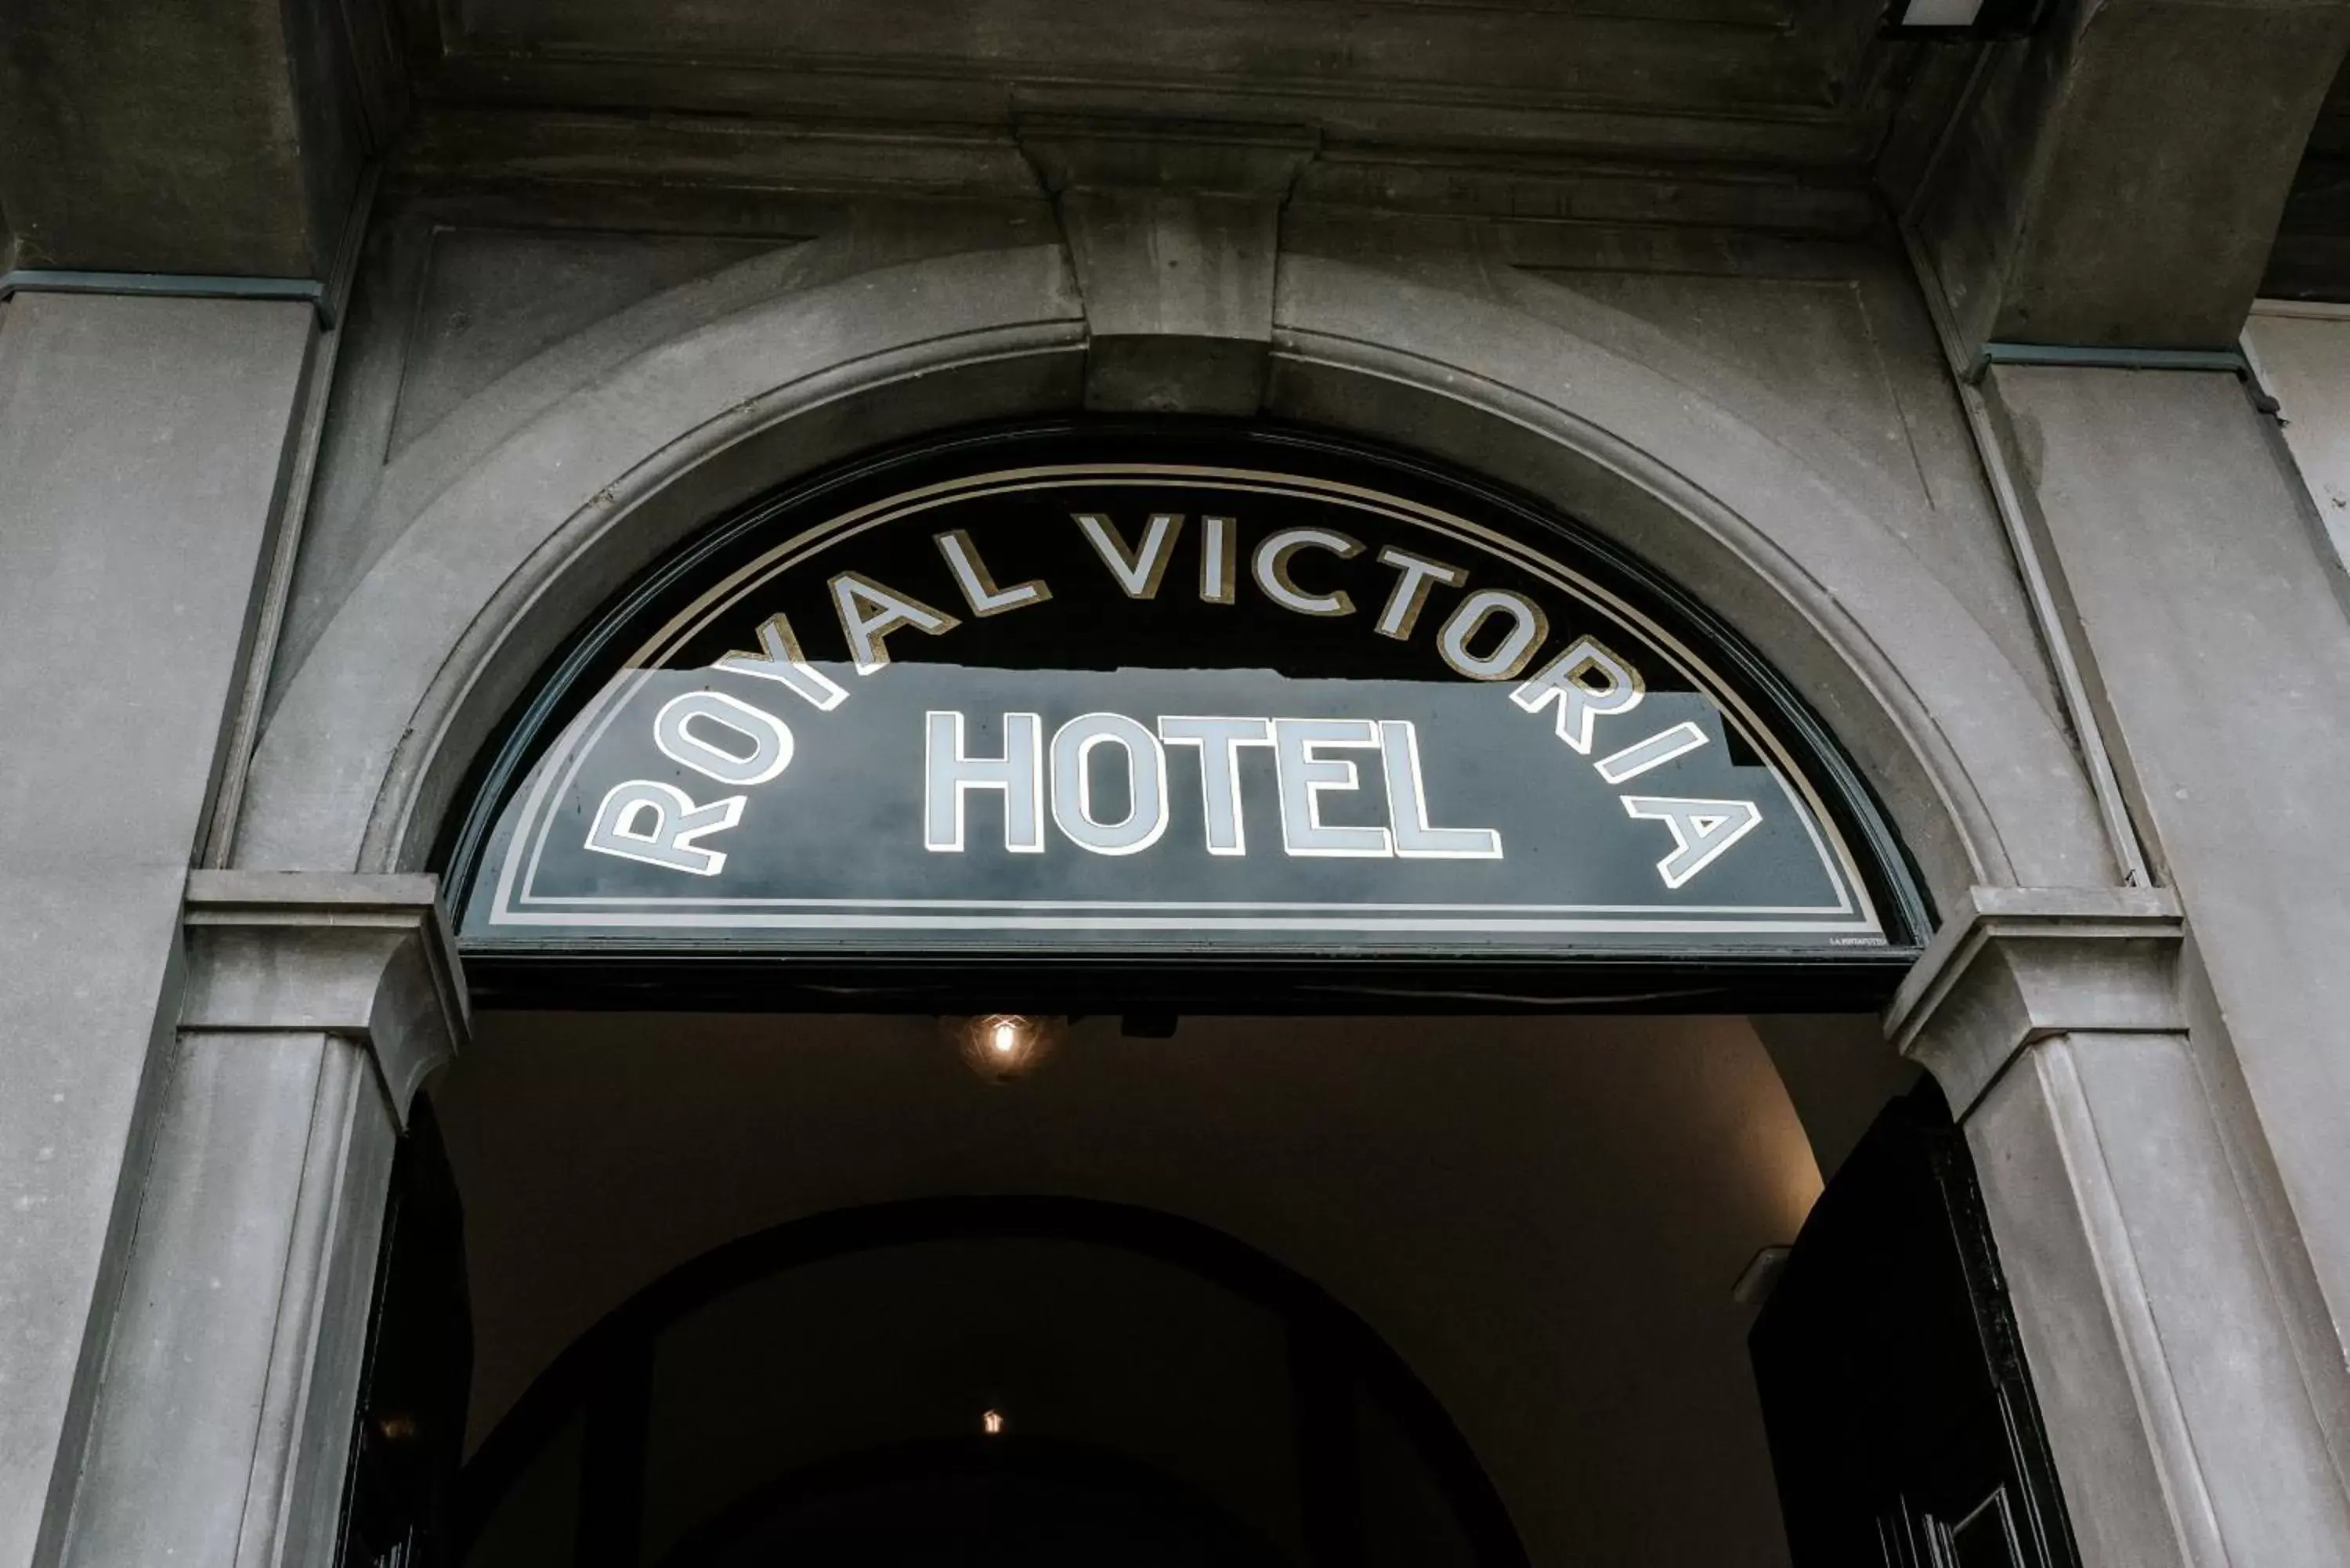 Facade/entrance in Royal Victoria Hotel